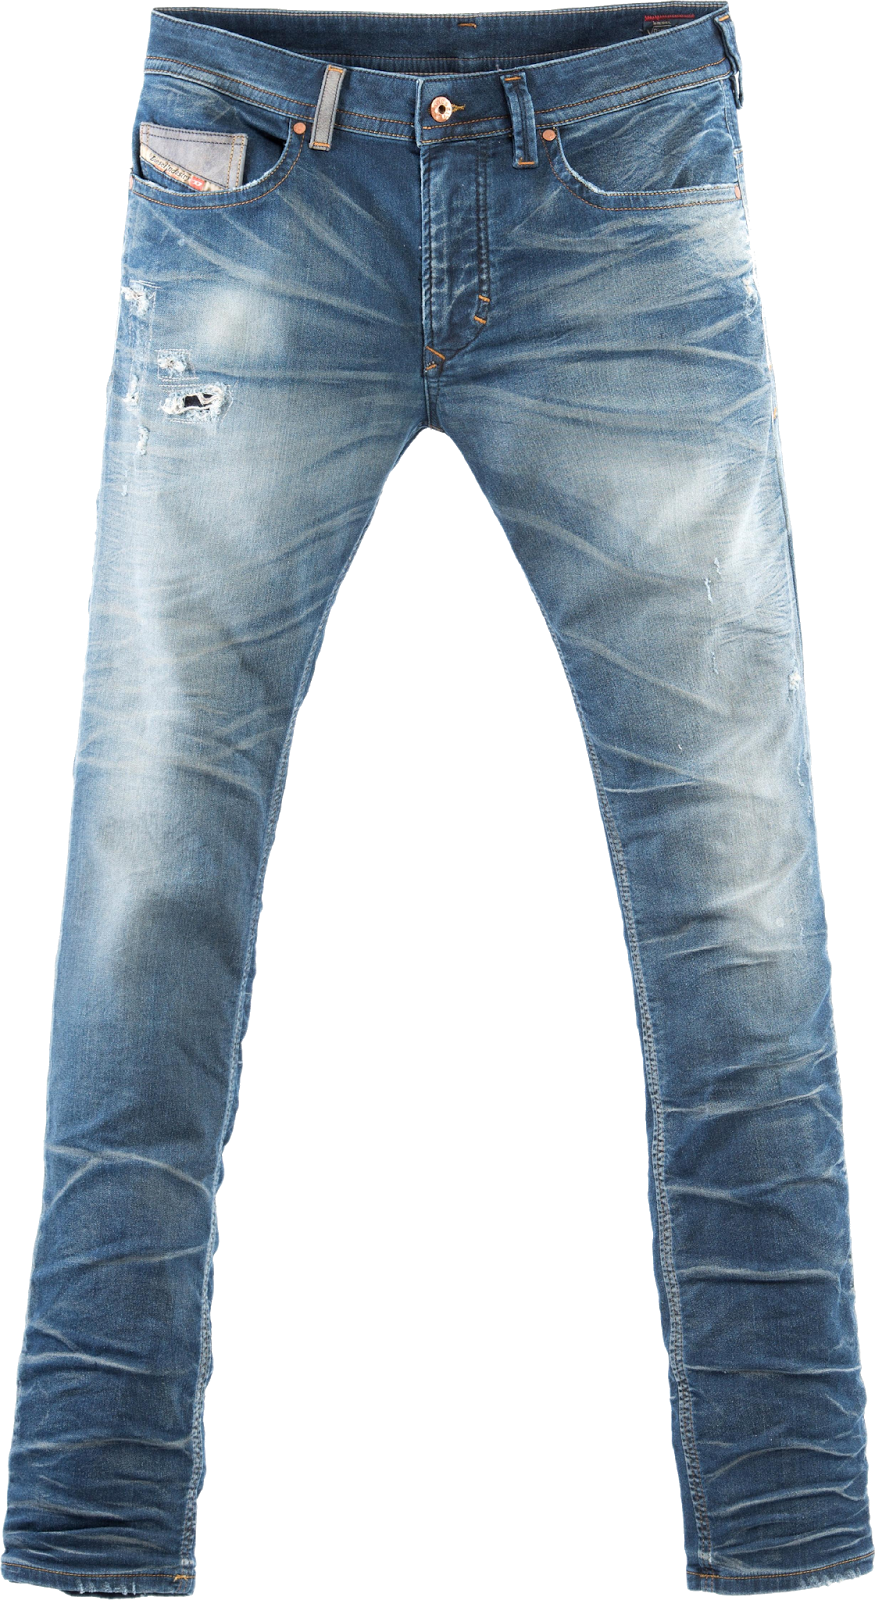 Damage Jeans - Blue Jeans, Transparent background PNG HD thumbnail